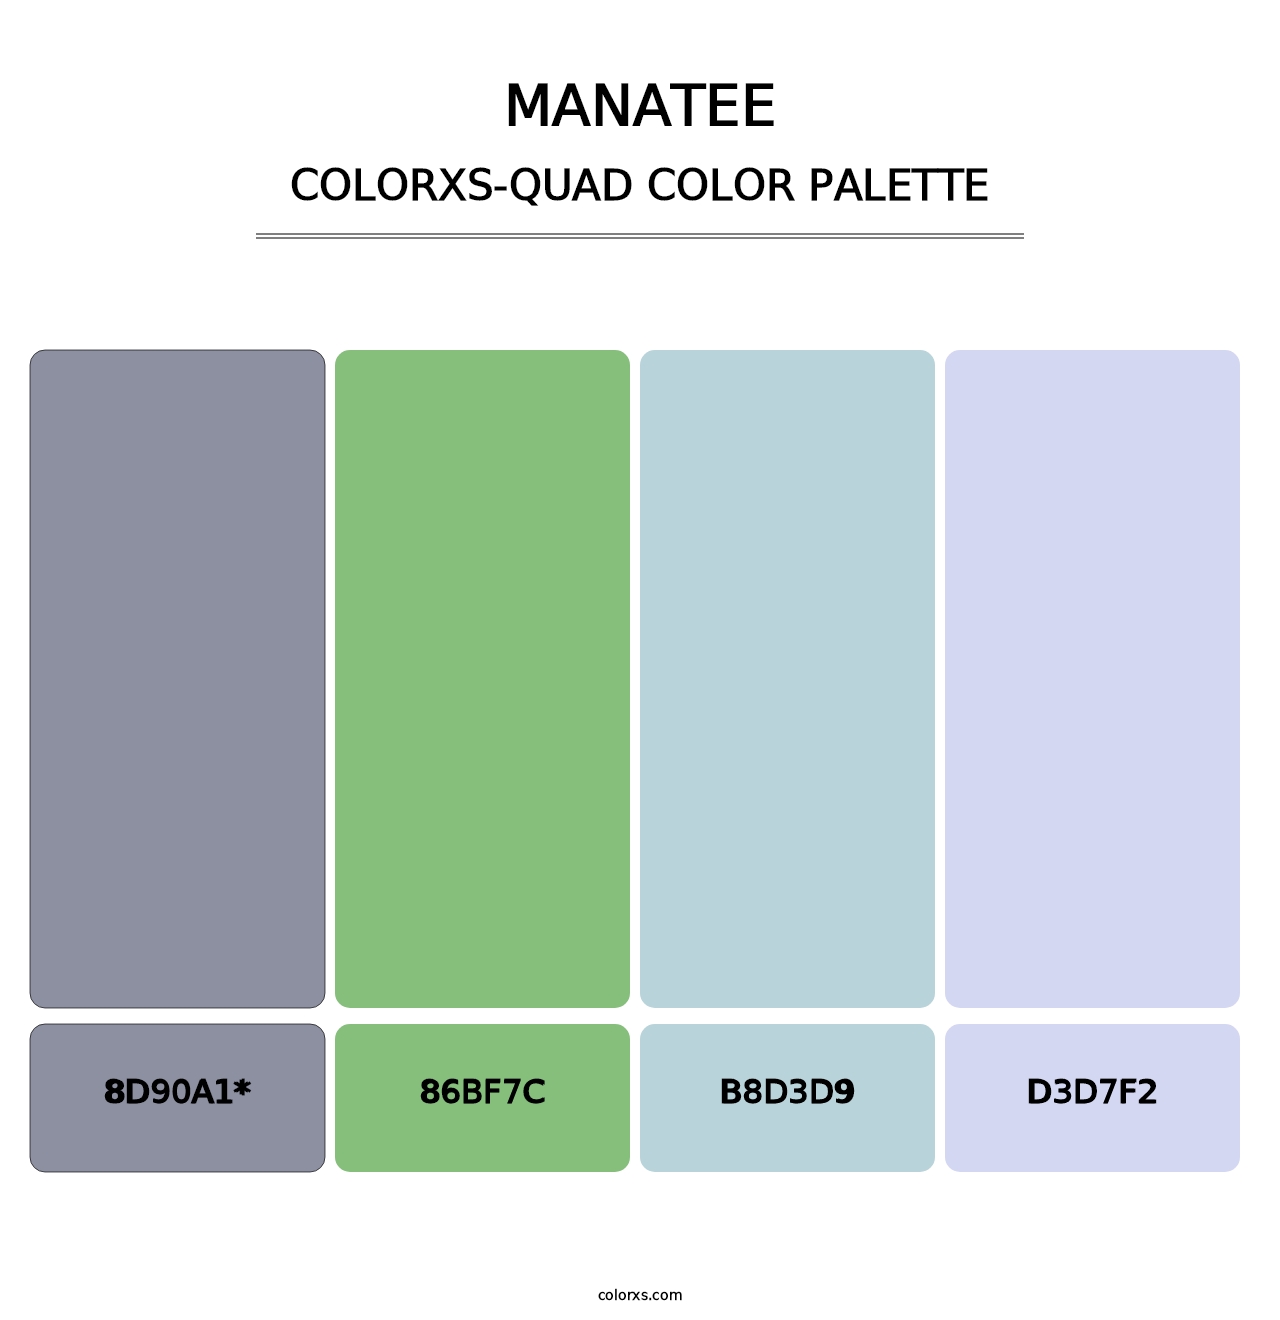 Manatee - Colorxs Quad Palette